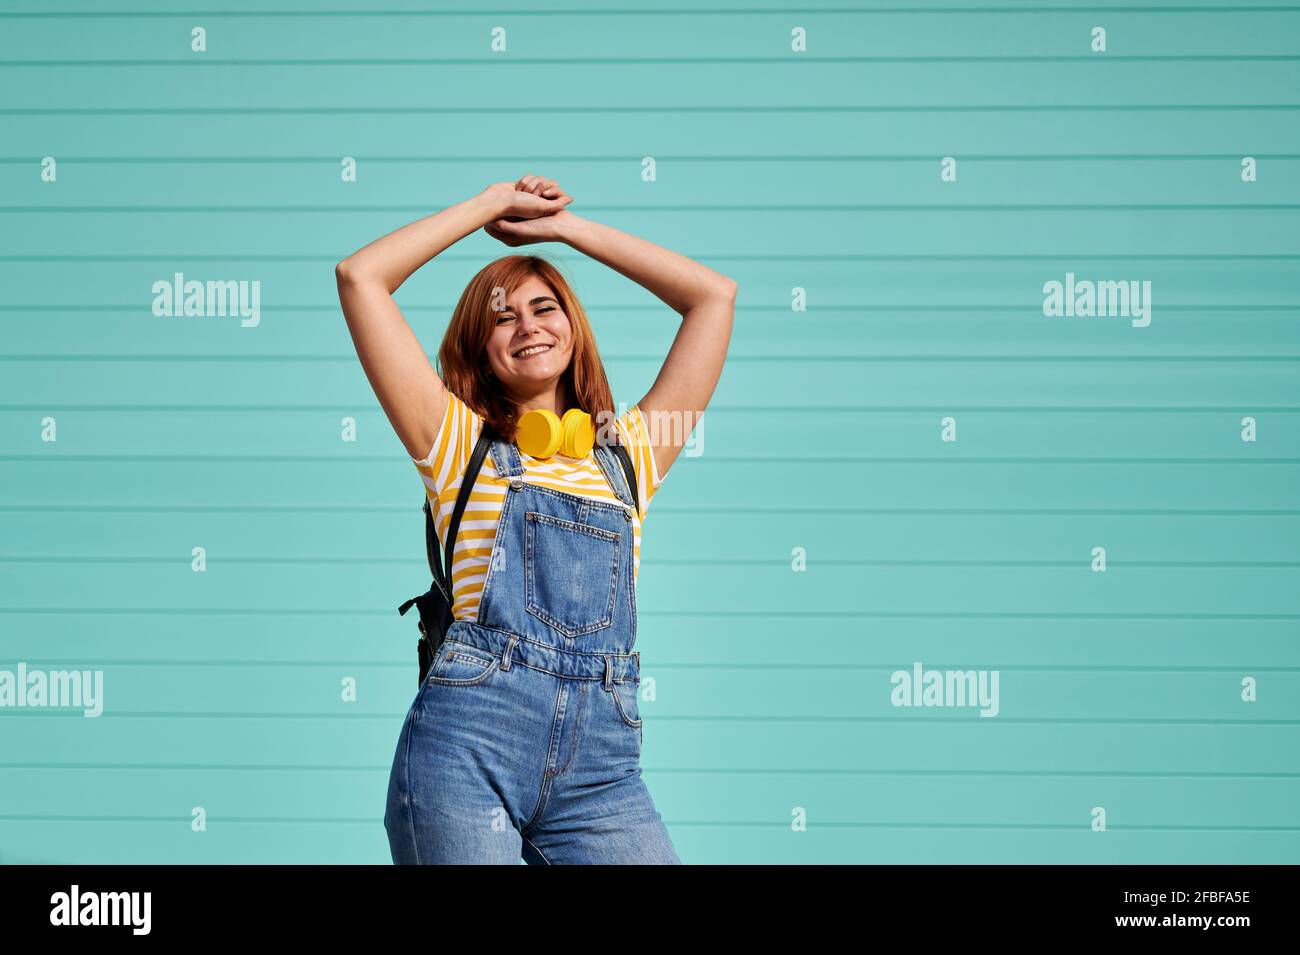 Lächelnde Frau tanzt vor türkisblauer Wand Stockfoto